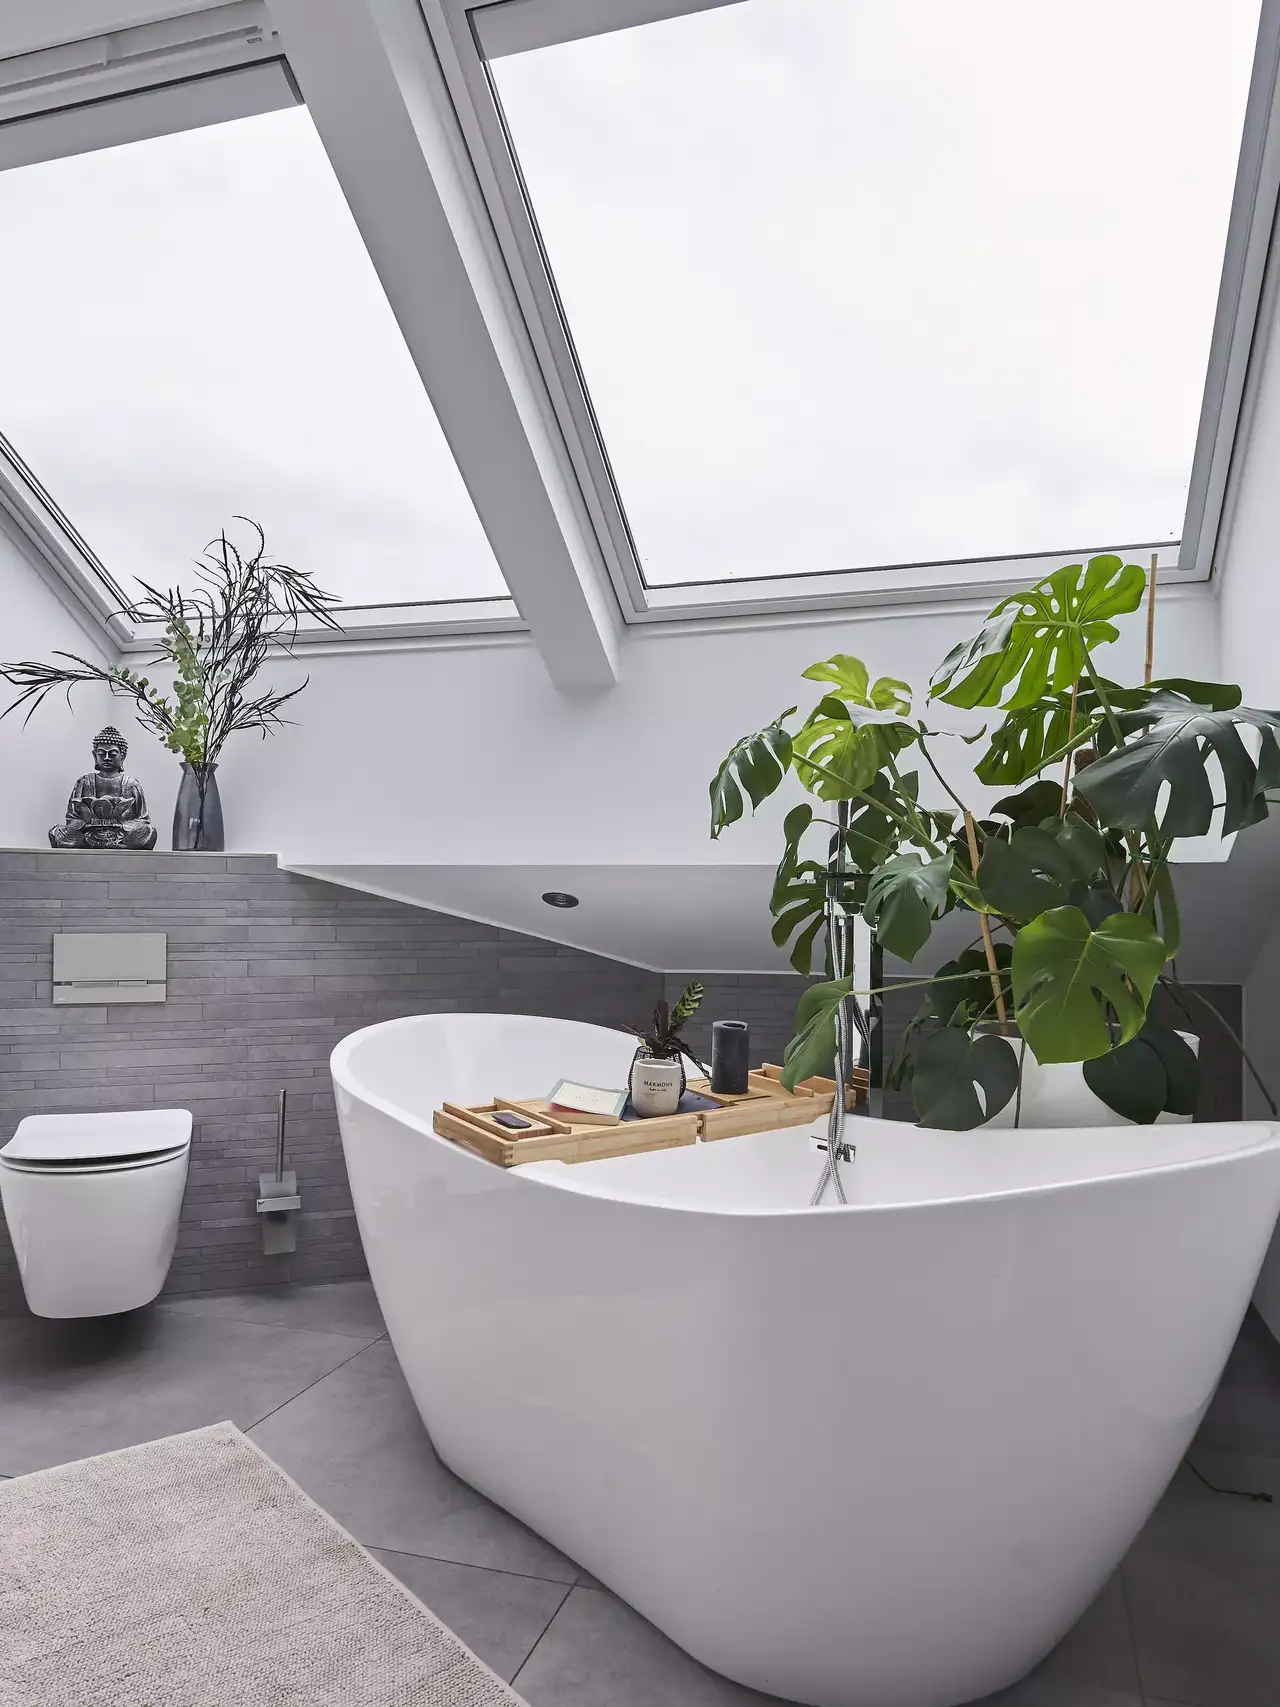 Modernes Badezimmer mit freistehender Badewanne, VELUX Dachflächenfenster und grünen Pflanzen.